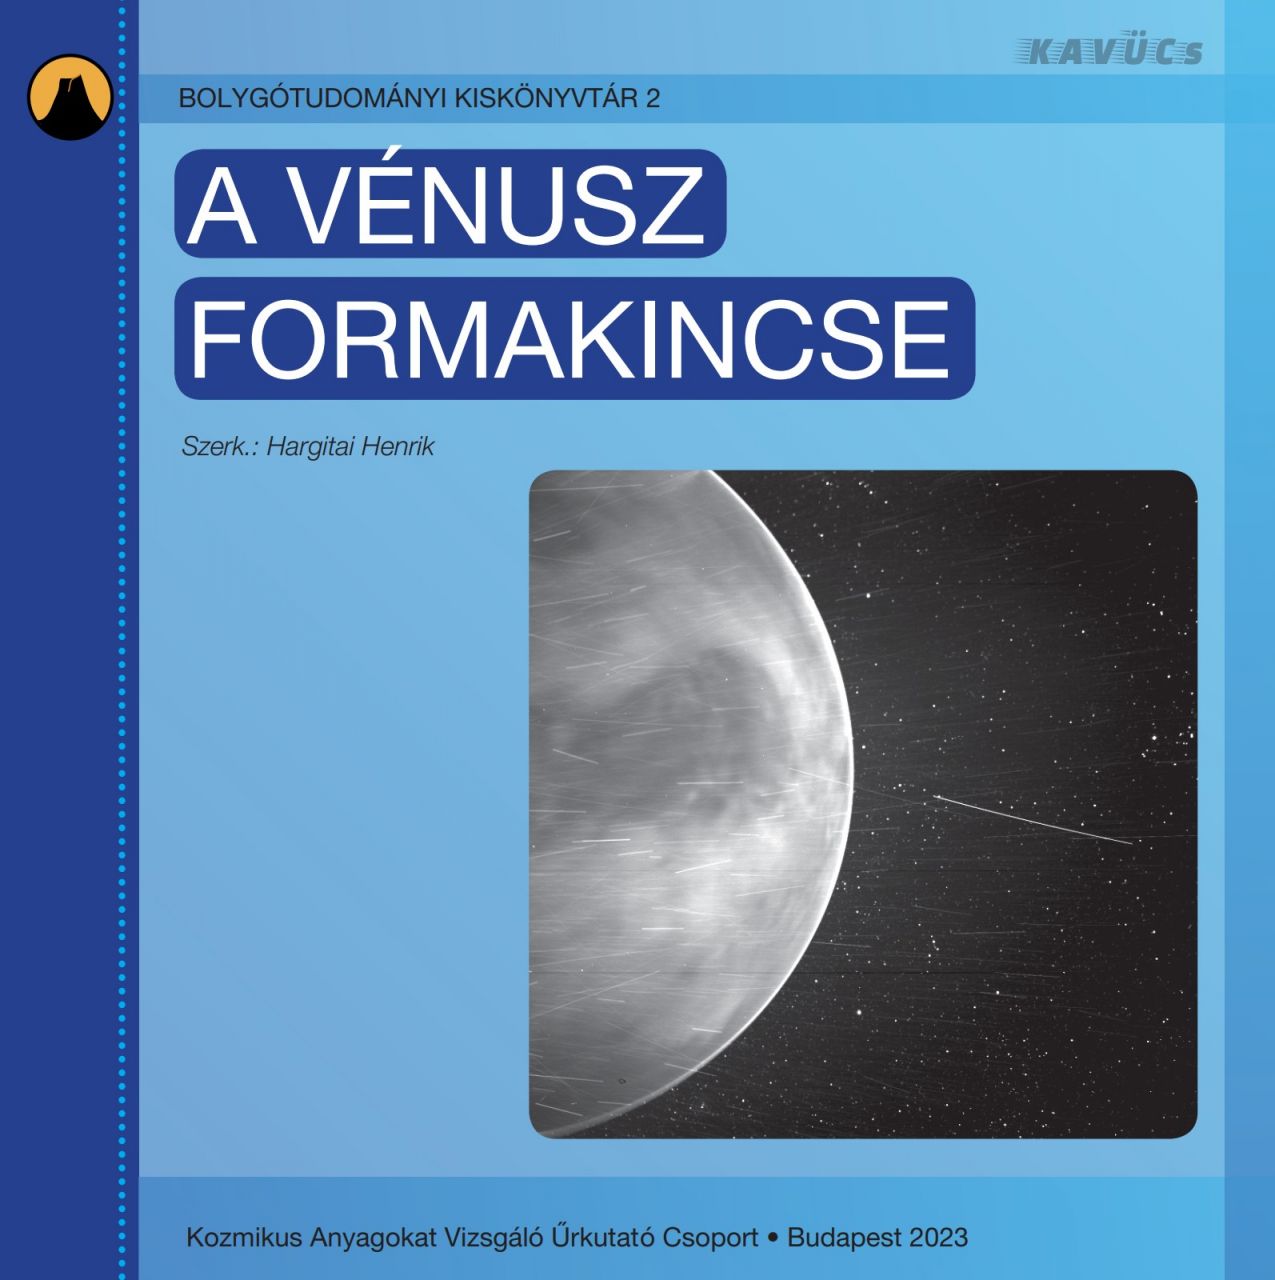 A vénusz formakincse - bolygótudományi kiskönyvtár 2.